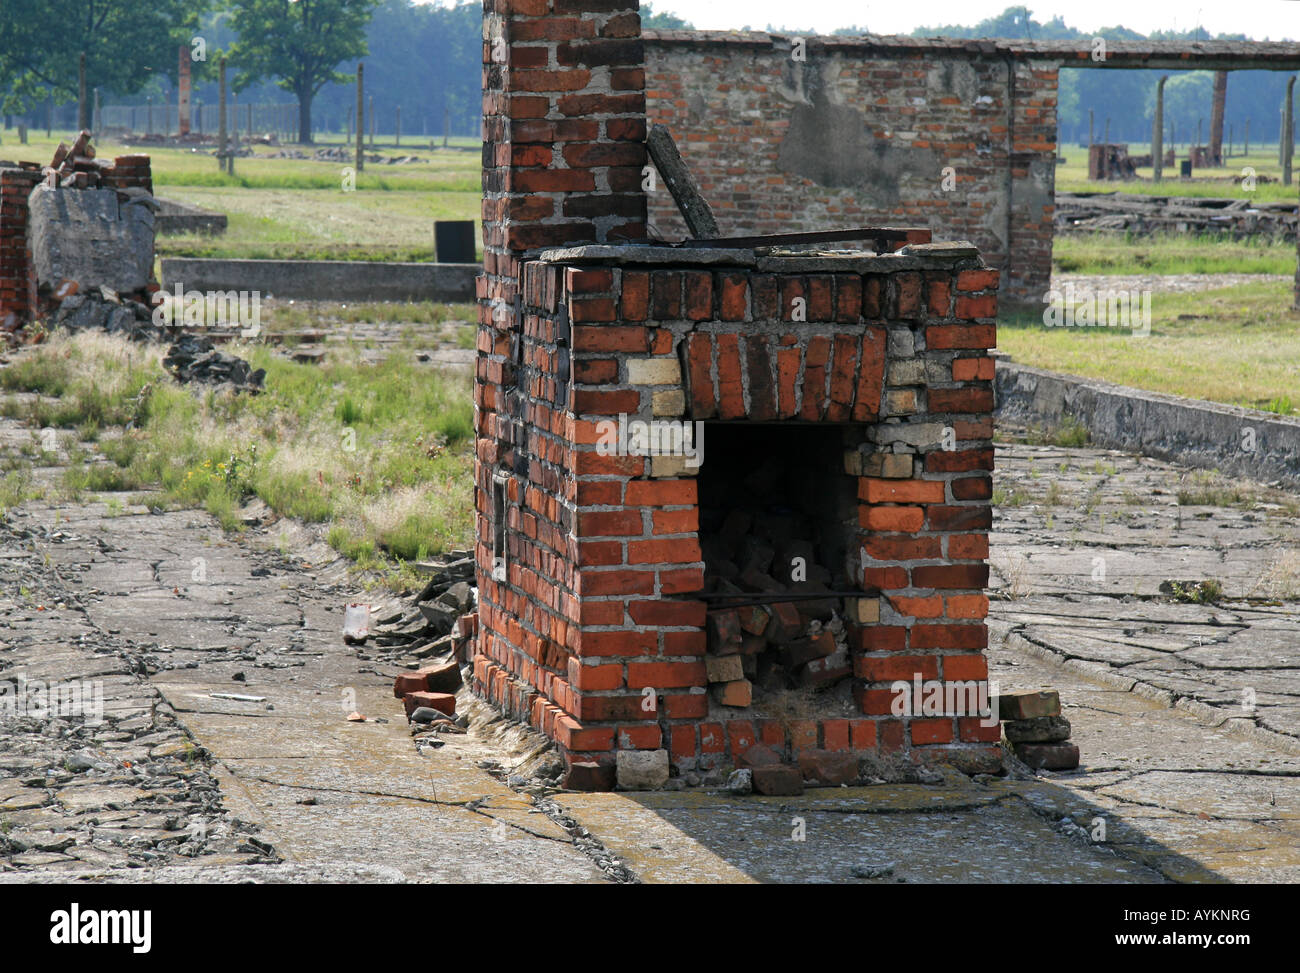 La cuisine et le chauffage dans les restes d'une cabane en bois détruits dans l'ancien camp de concentration Nazi à Auschwitz Birkenau. Banque D'Images